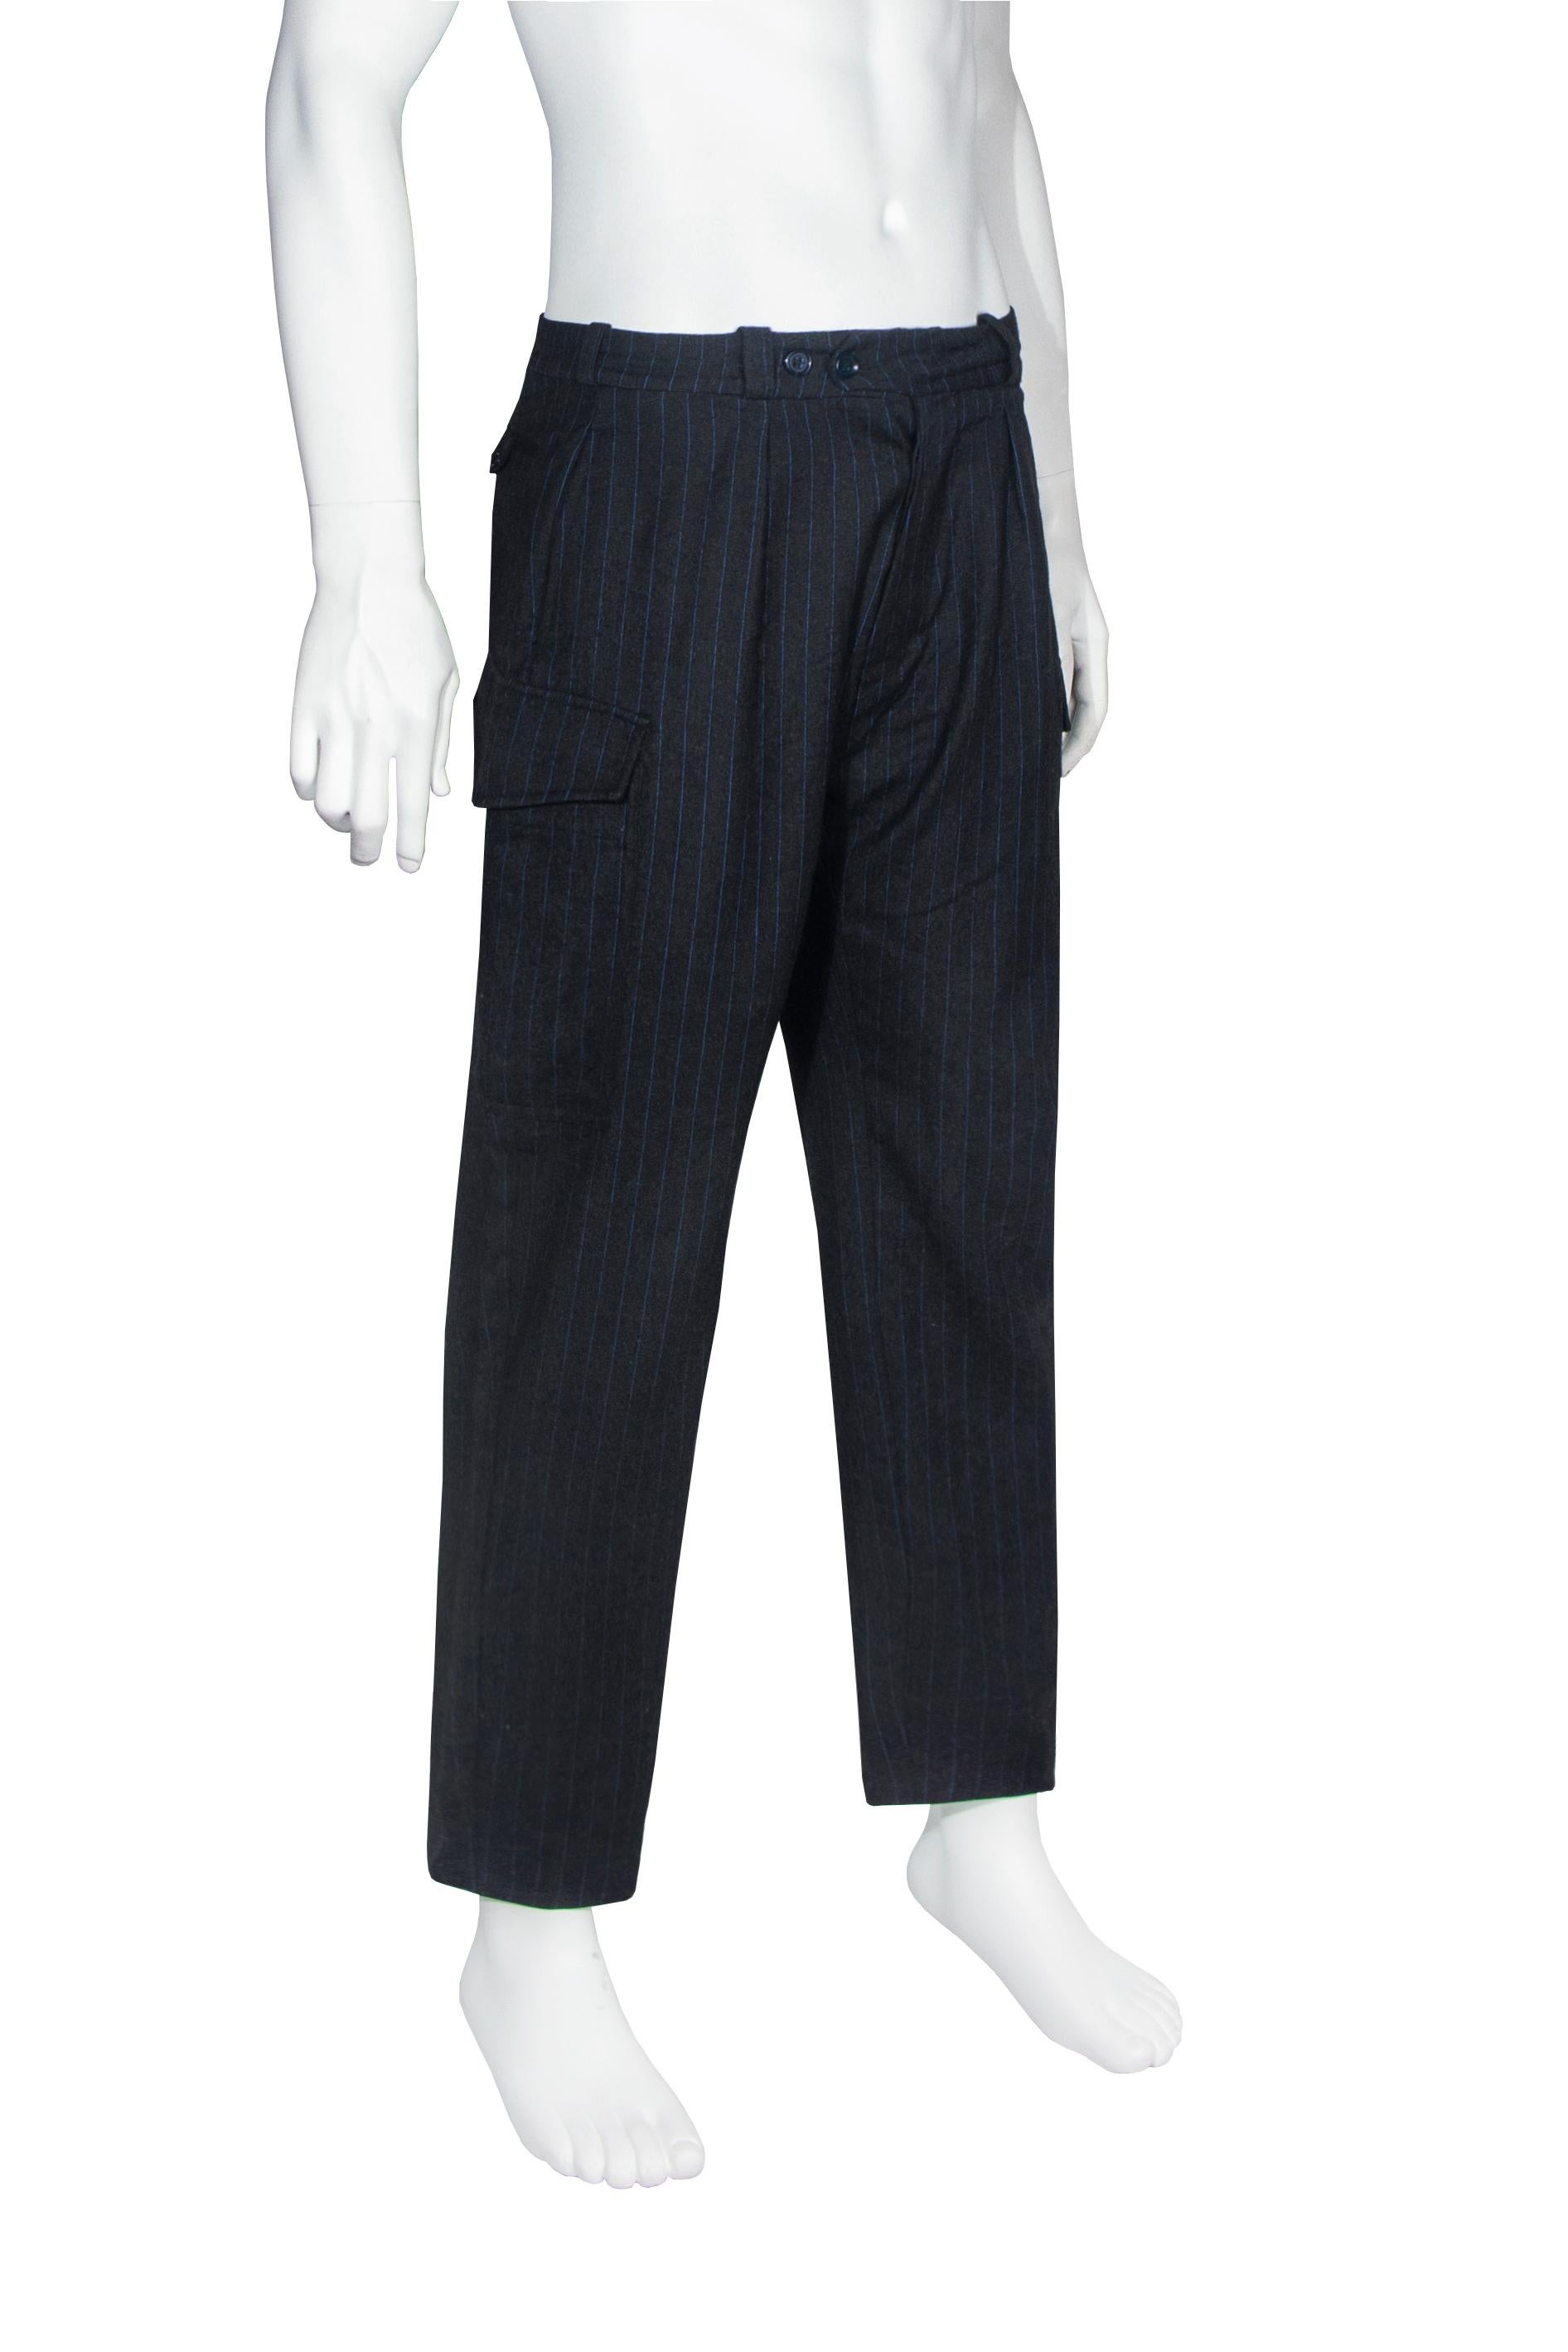 Men's Alexander McQueen men's pinstripe cargo trousers, fw 1997 For Sale